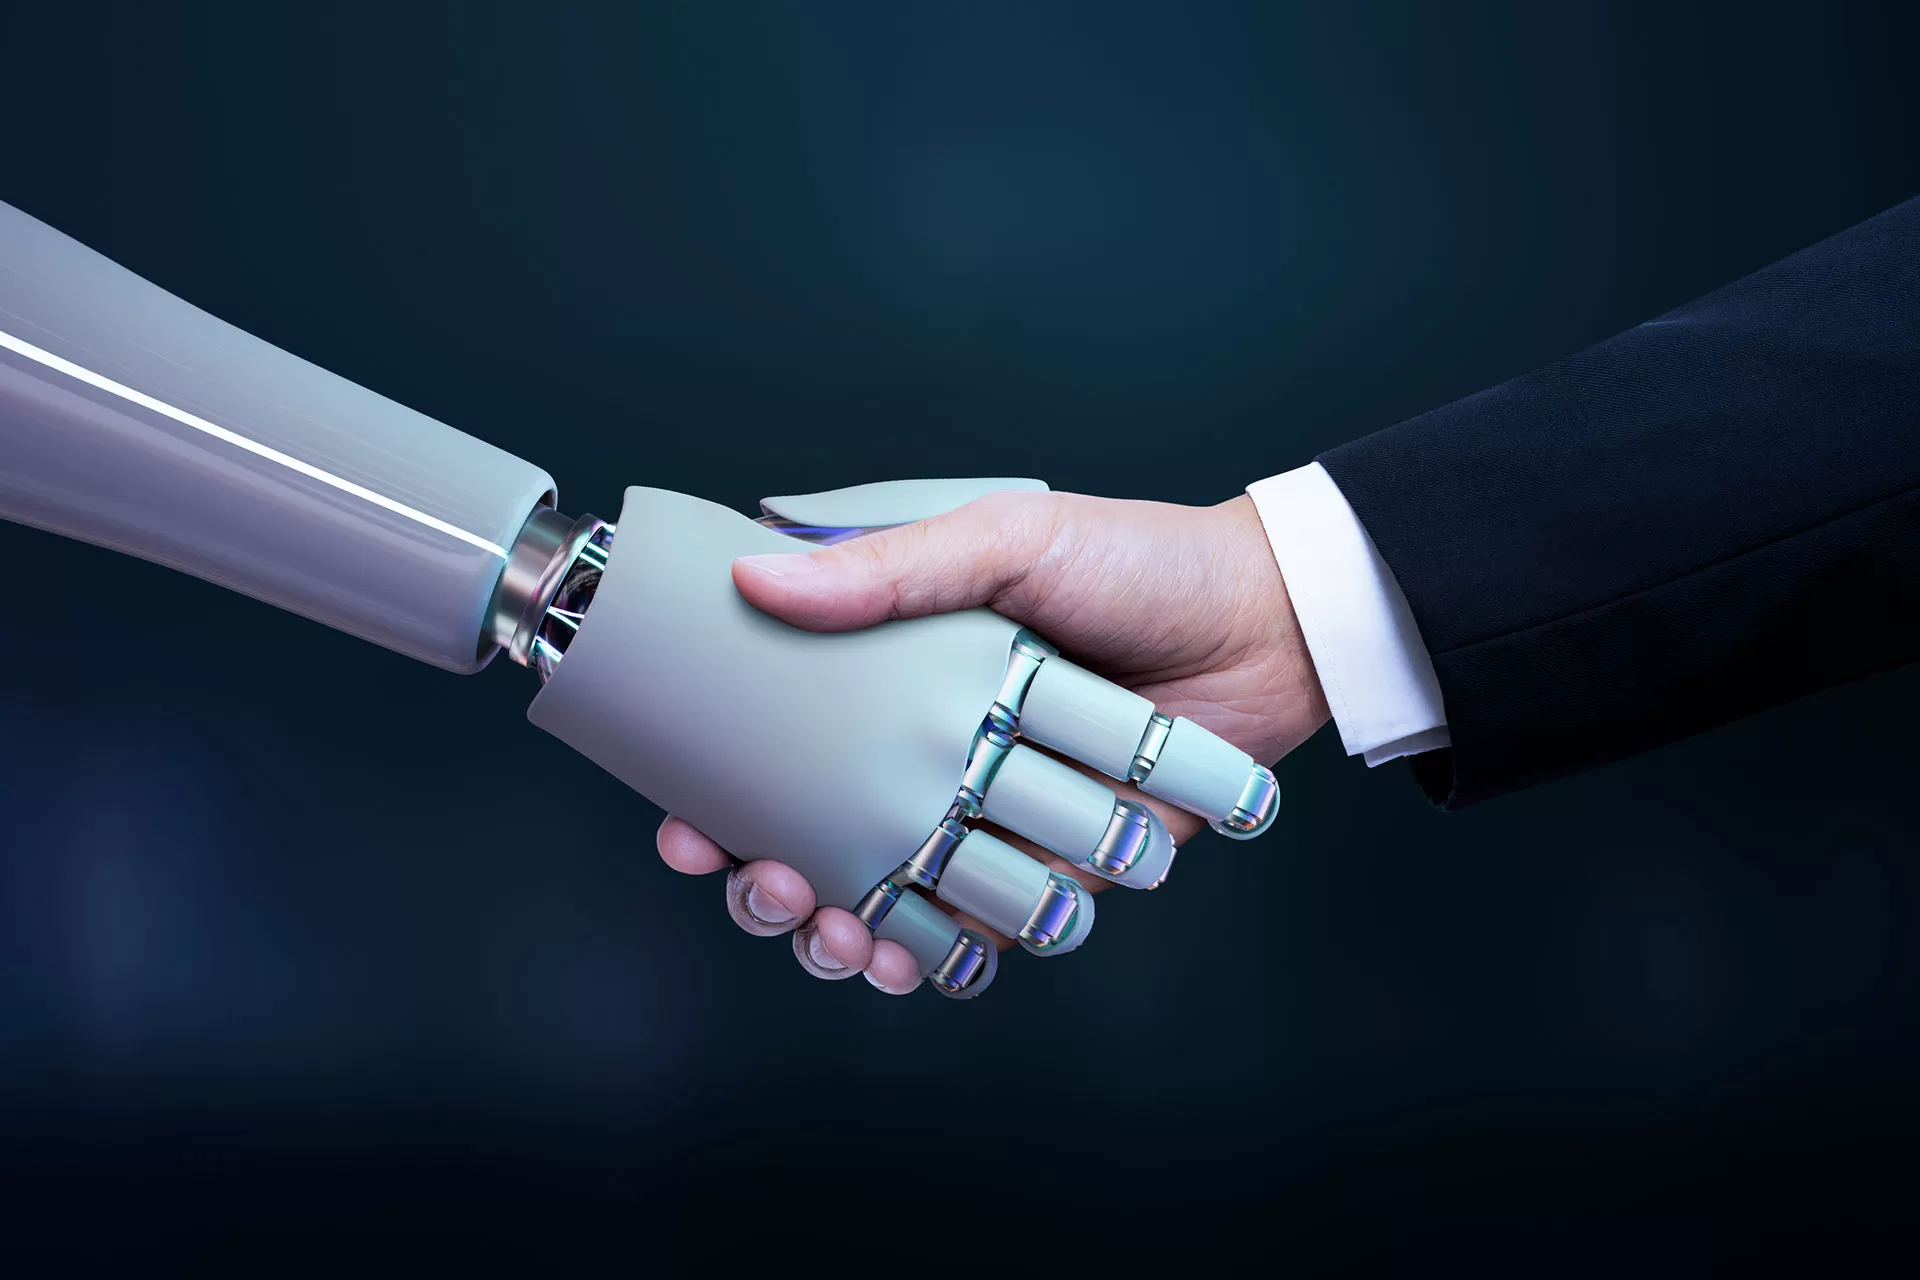 Robotlar ve Etik: Sınırlarımızı Nasıl Zorluyorlar?